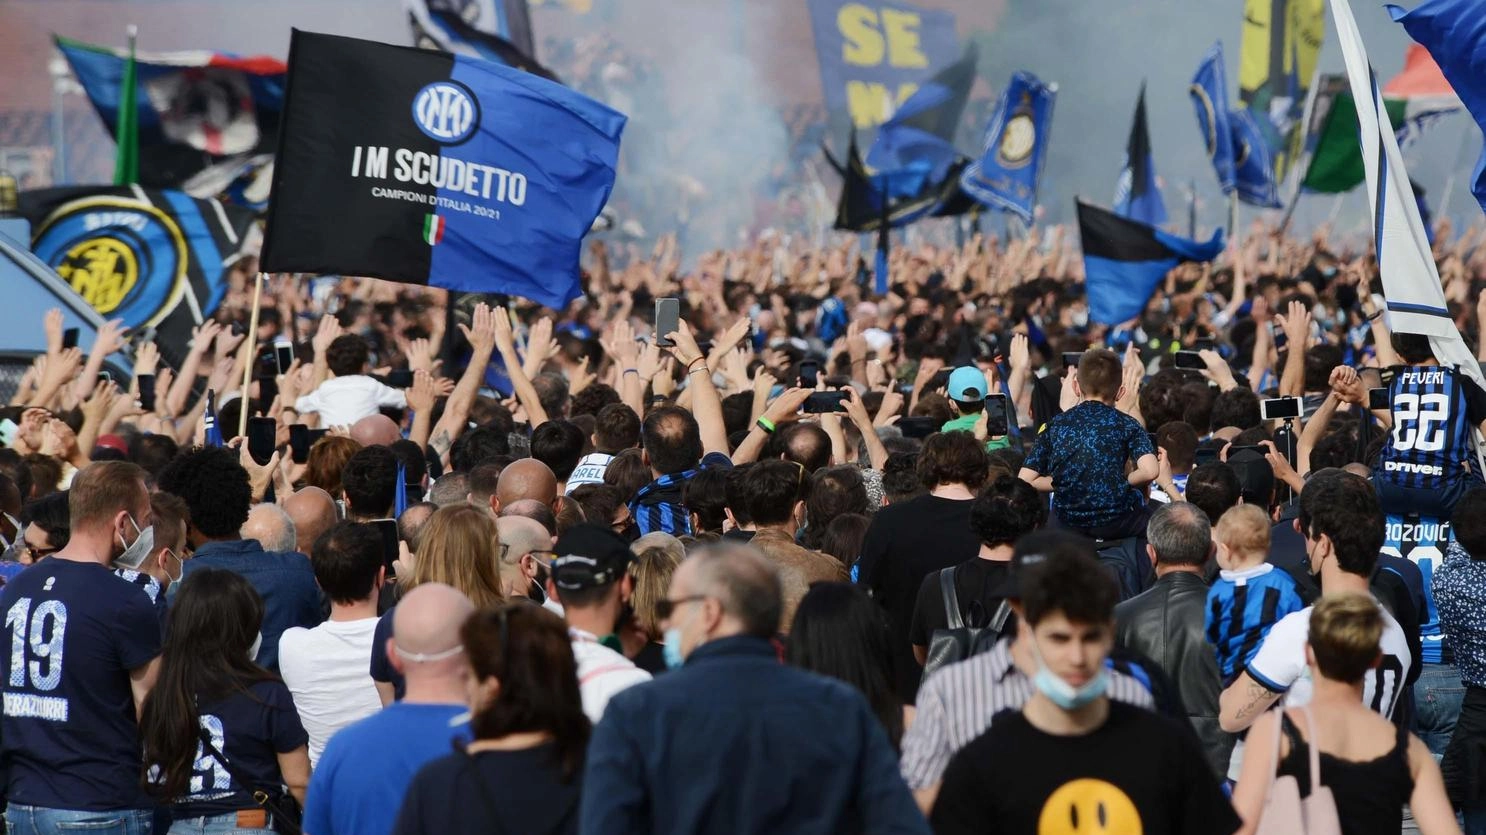 Domenica il corteo dei campioni d’Italia dalle 15.30 alle 20.30. Attese centinaia di migliaia di tifosi, pronto il piano sicurezza.